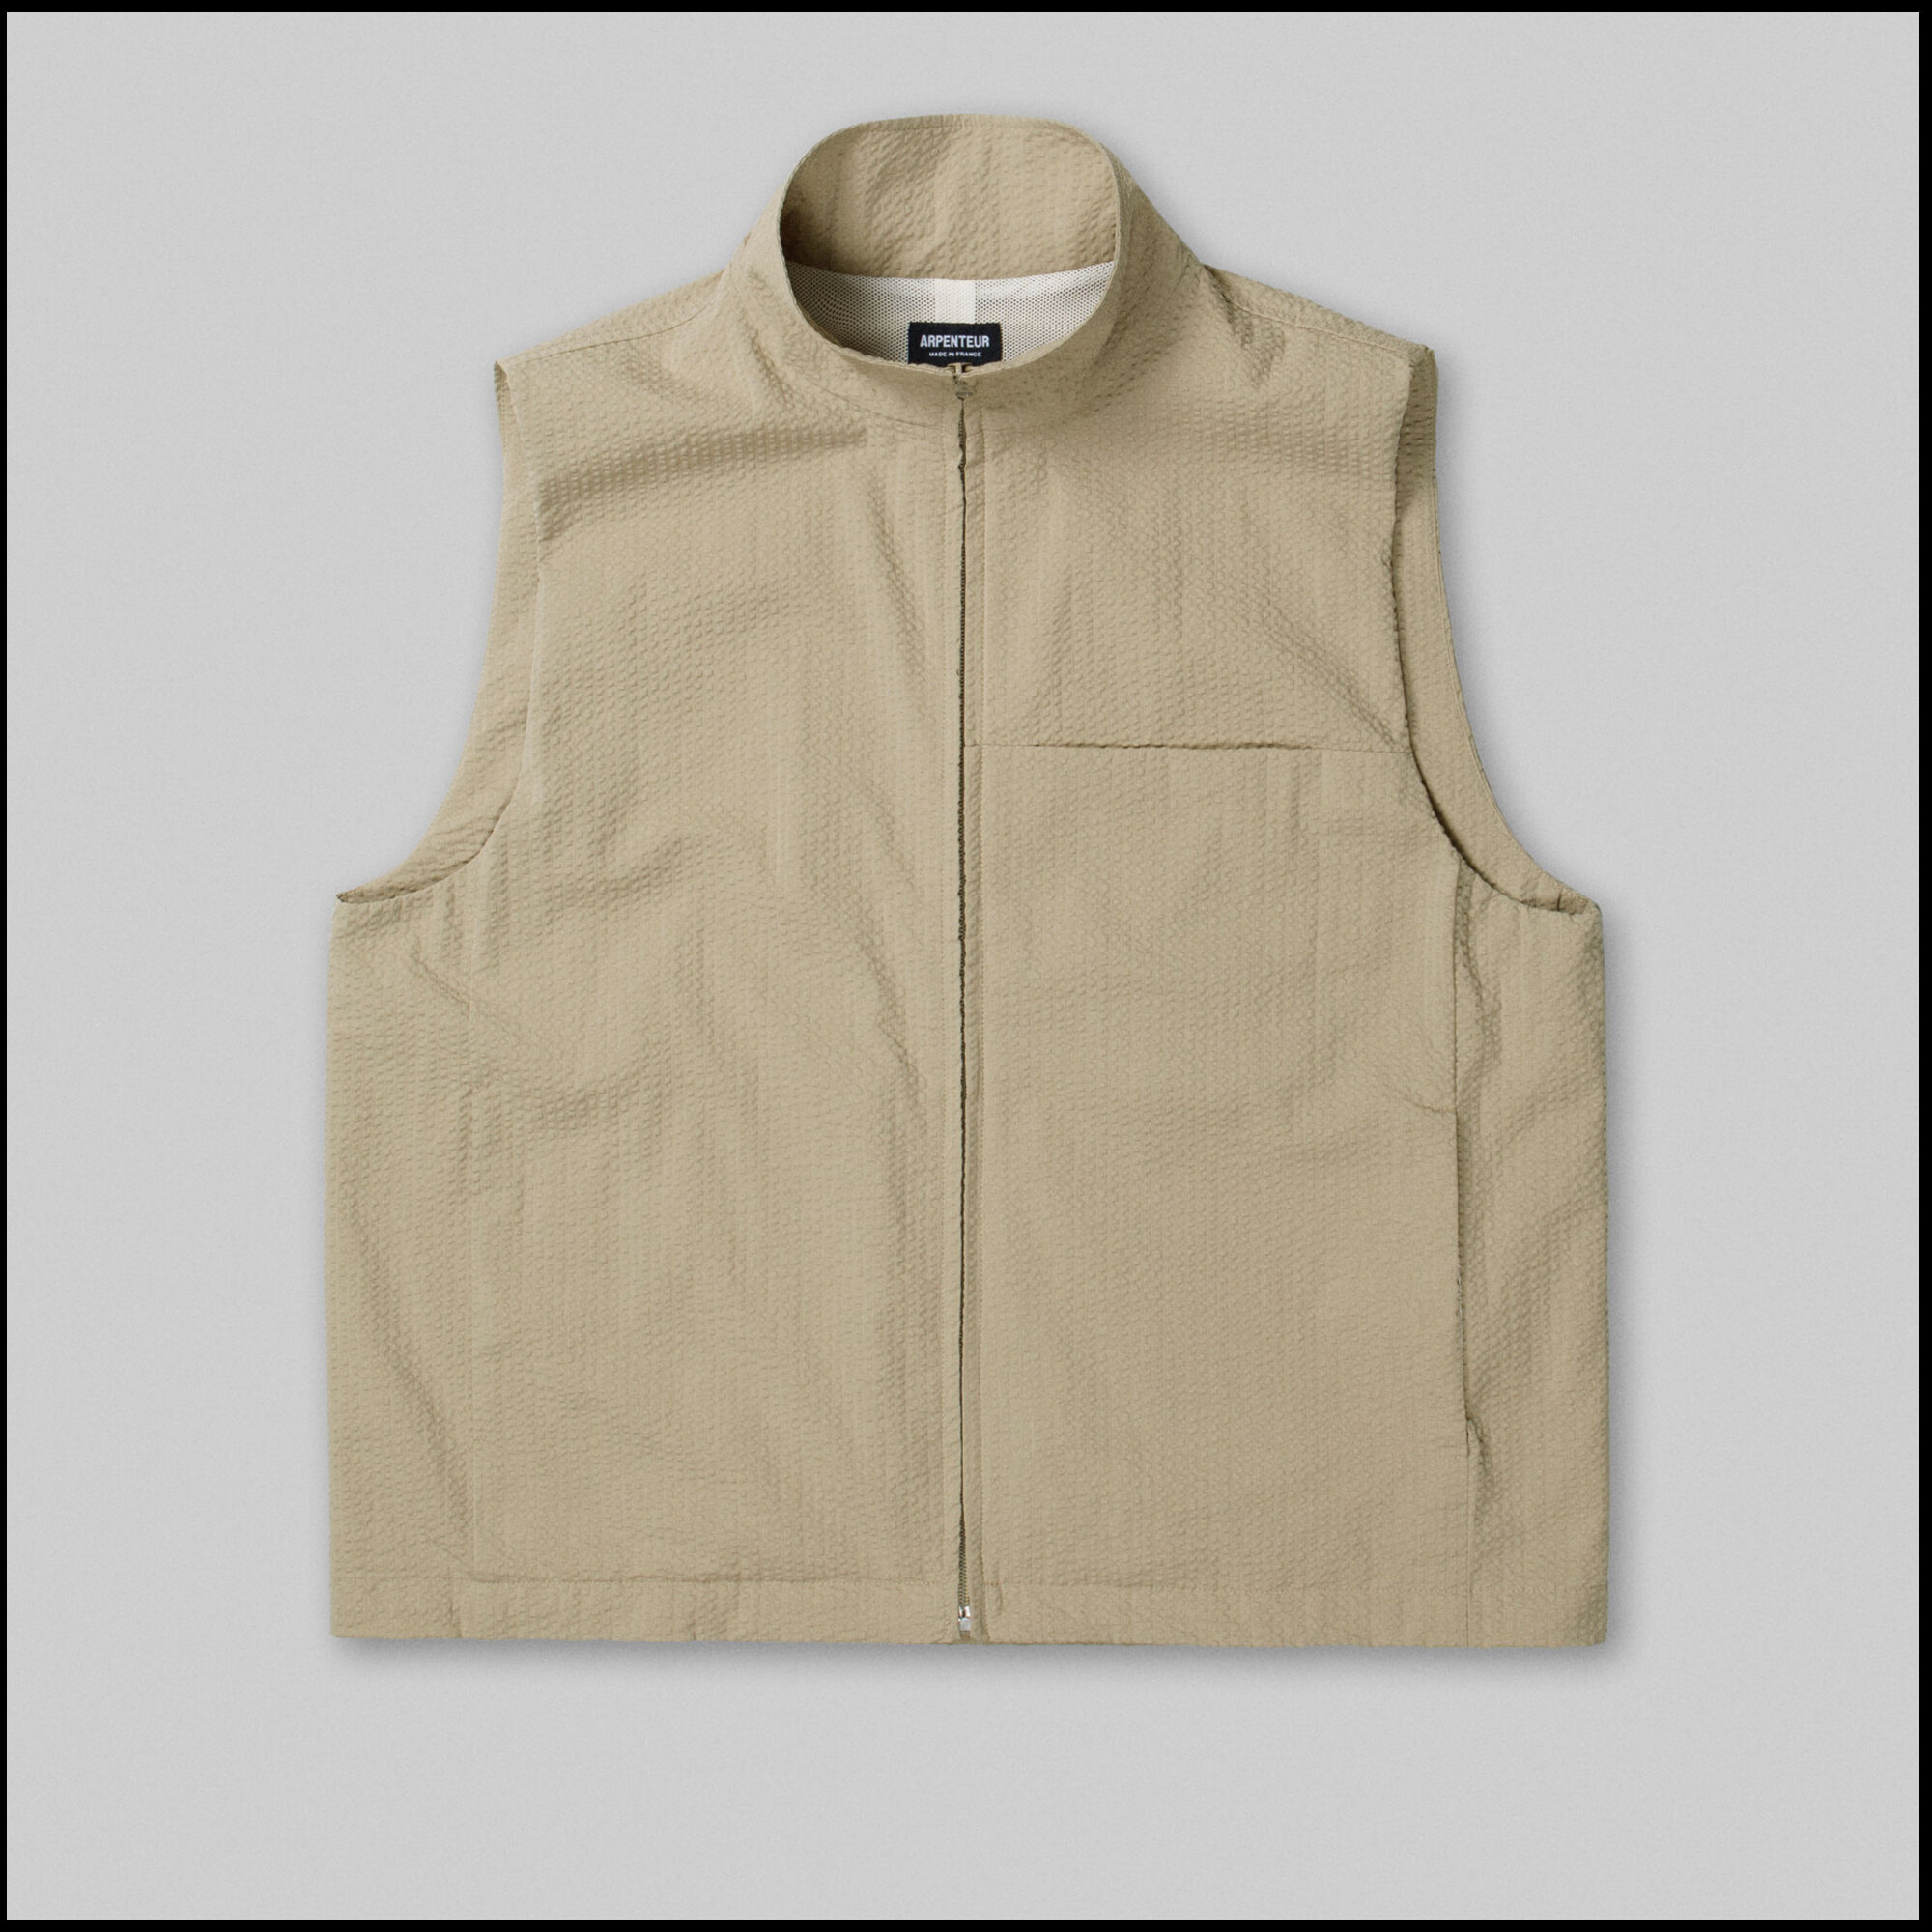 TRACK vest by Arpenteur in Sand color